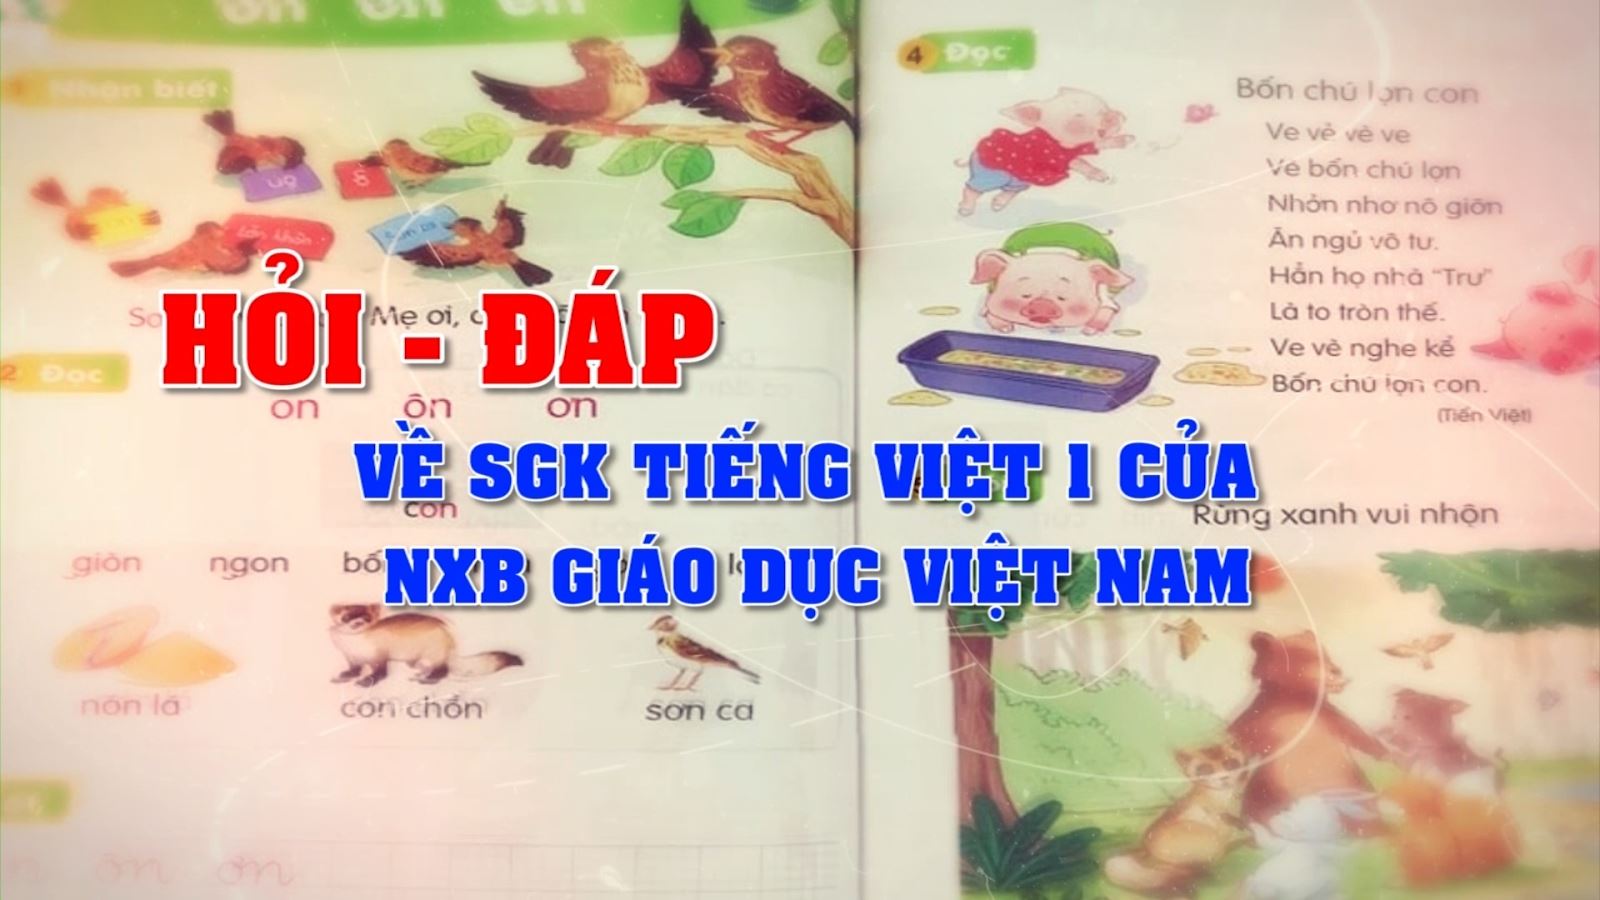 Hỏi đáp về SGK Tiếng Việt 1 của NXB Giáo dục Việt Nam (Phần 2)